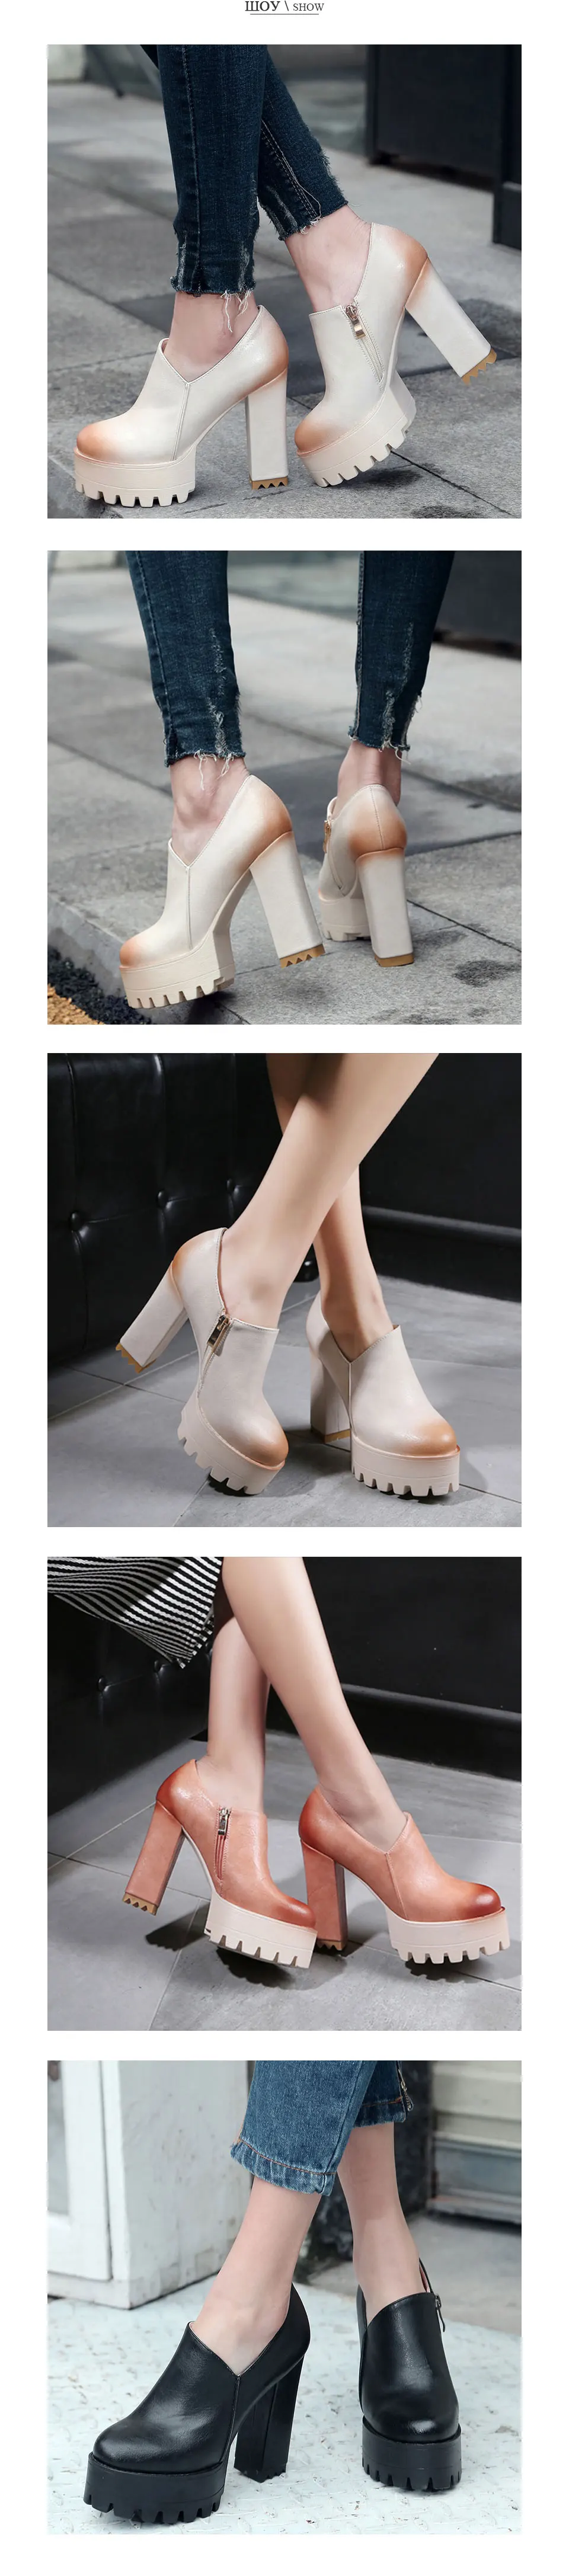 Fanyuan/женские туфли-лодочки повседневные туфли-гладиаторы на очень высоком каблуке и платформе весенние тонкие туфли с круглым носком женская обувь на молнии размера плюс